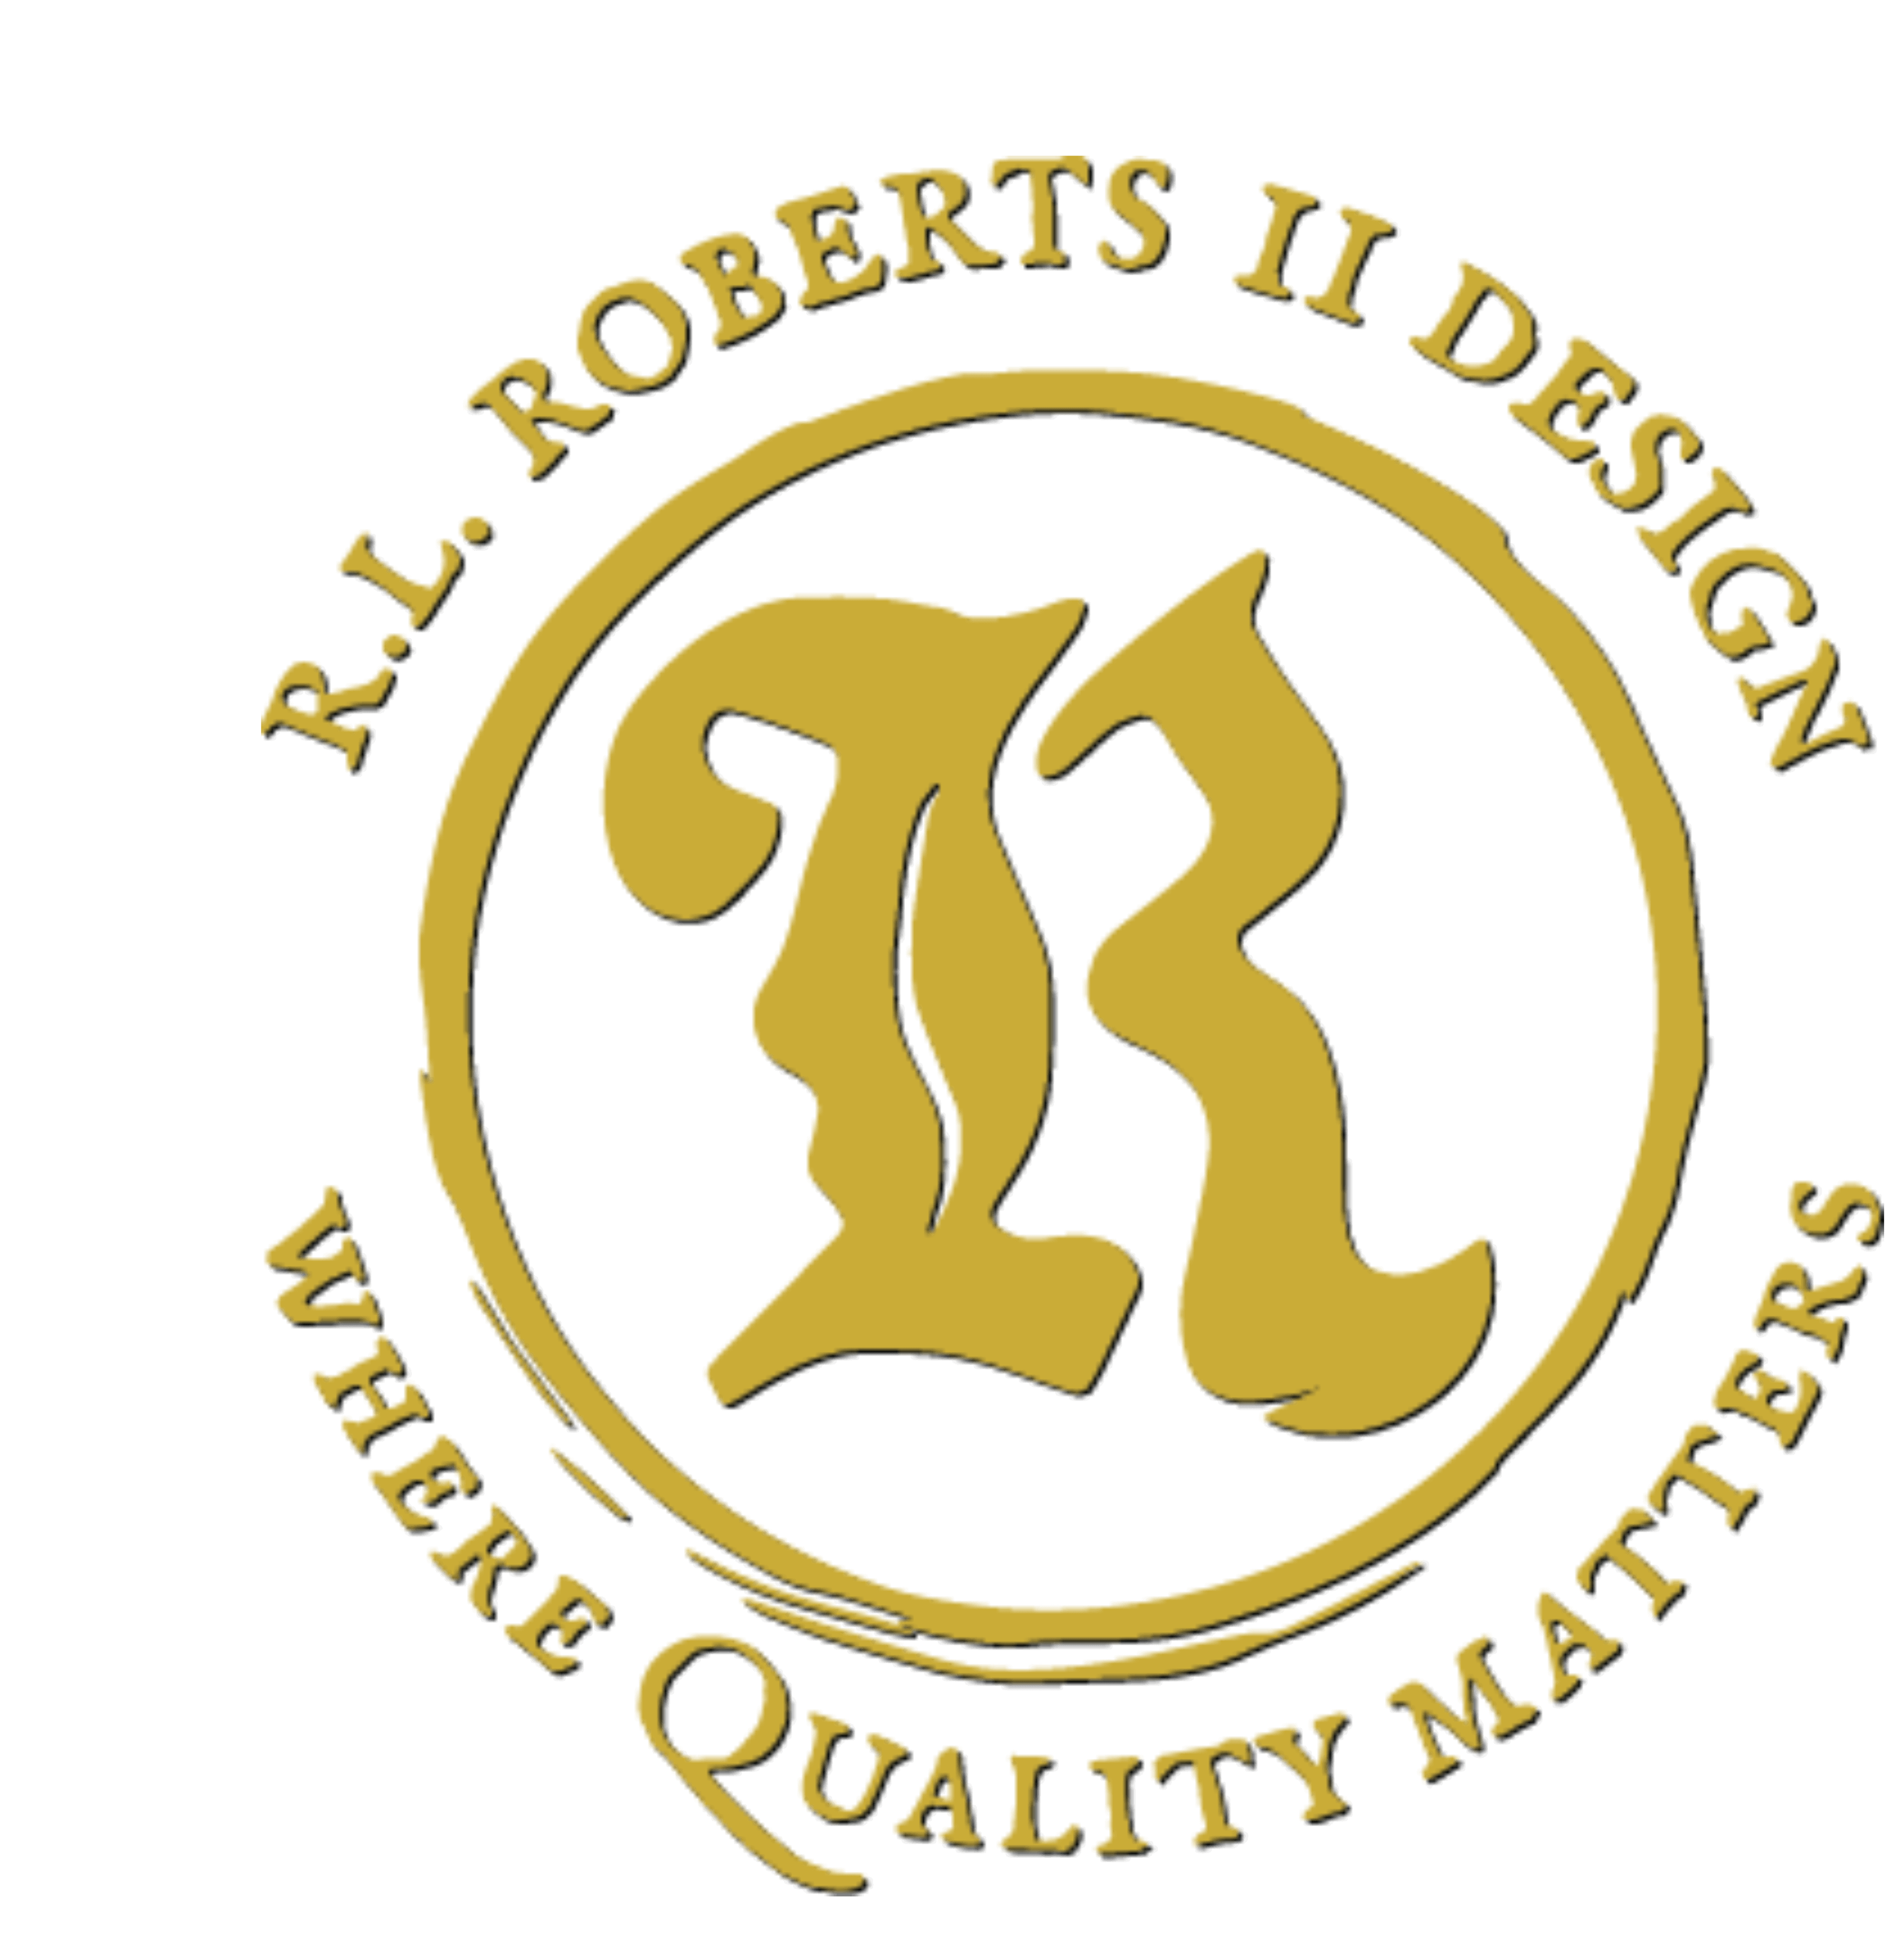 R.L. Roberts II Design, LLC